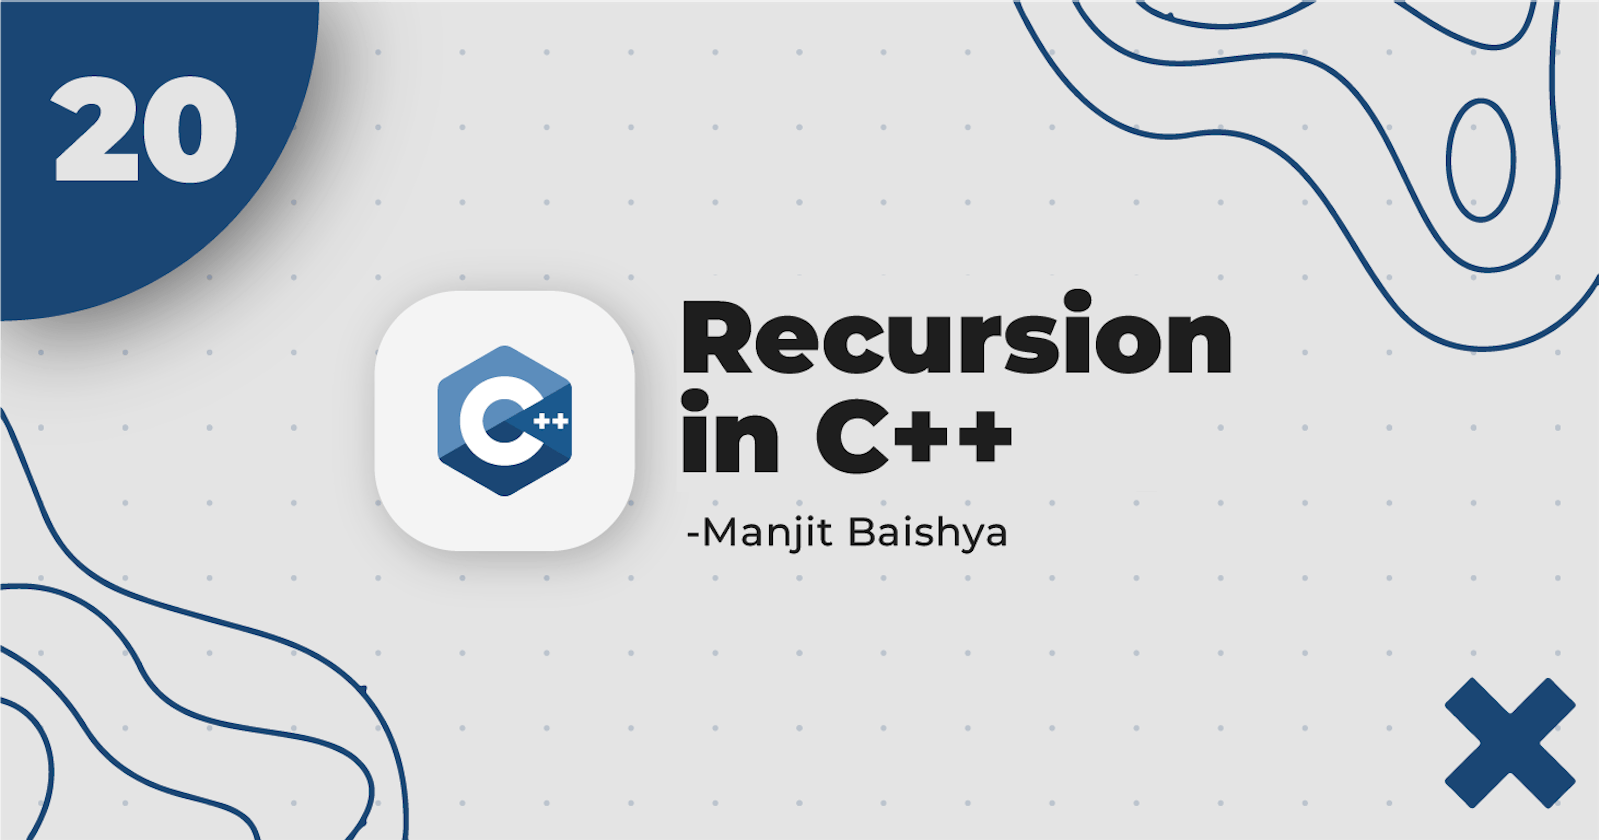 20. Recursion in C++